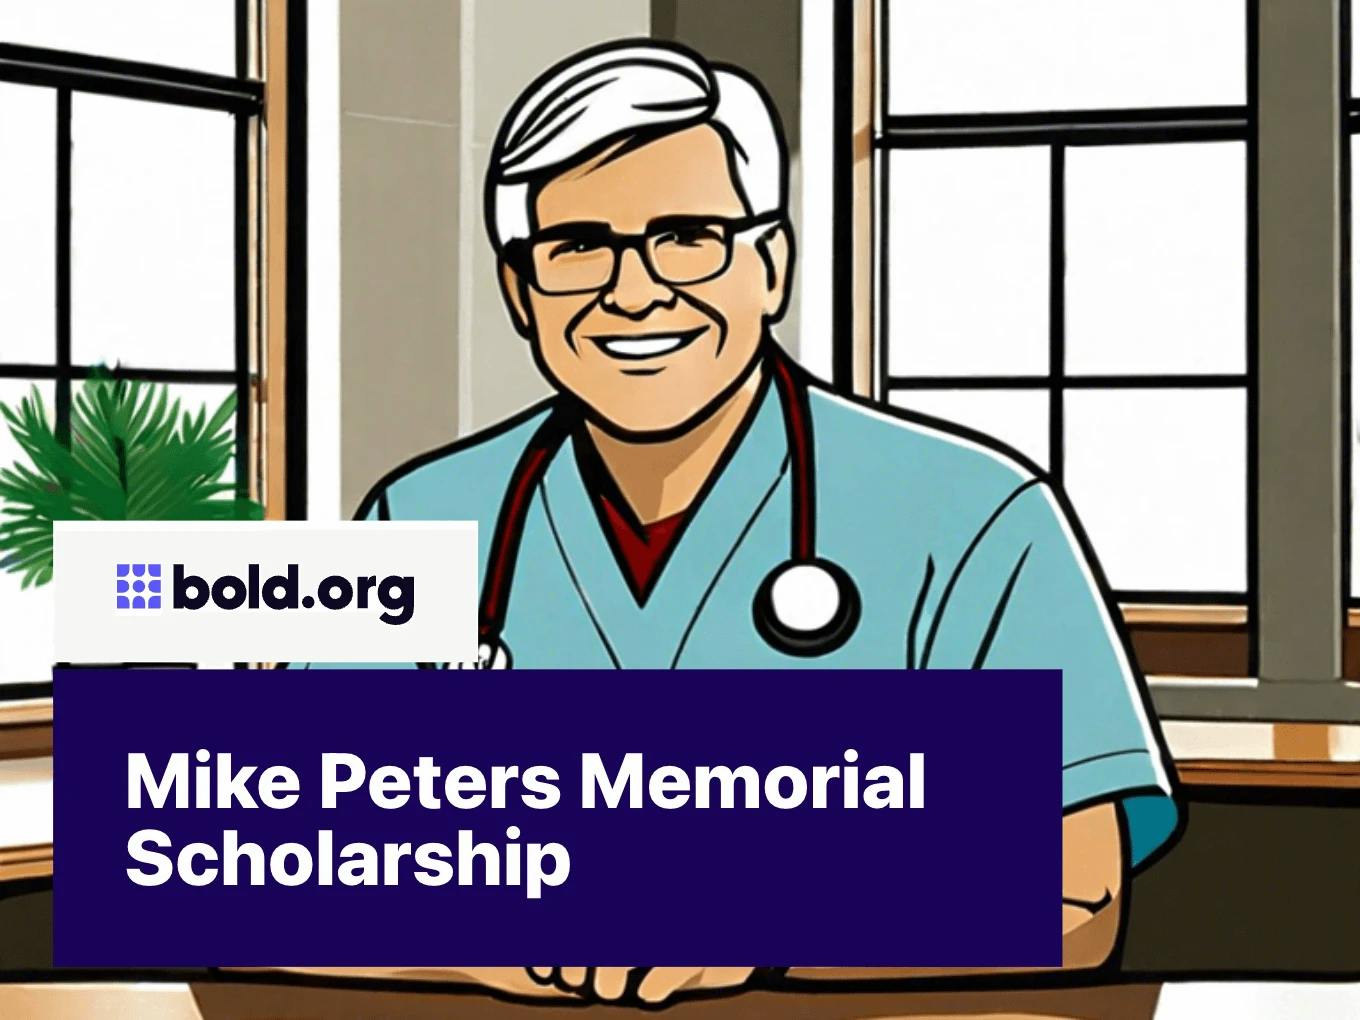 Mike Peters Memorial Scholarship